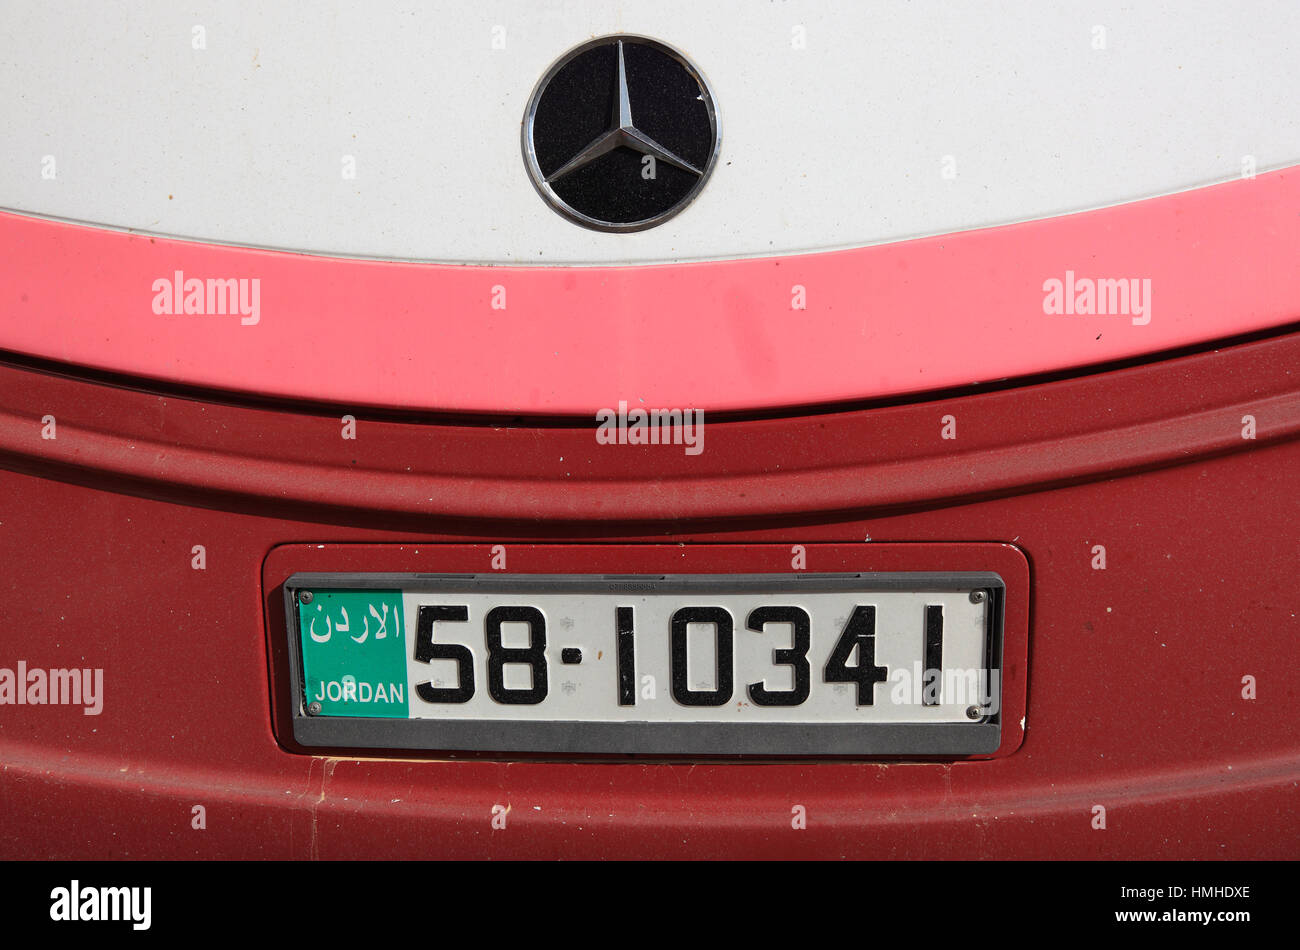 Qatar Arabisches KFZ Kennzeichen Nummernschild Schild Arabian Number Plate. 